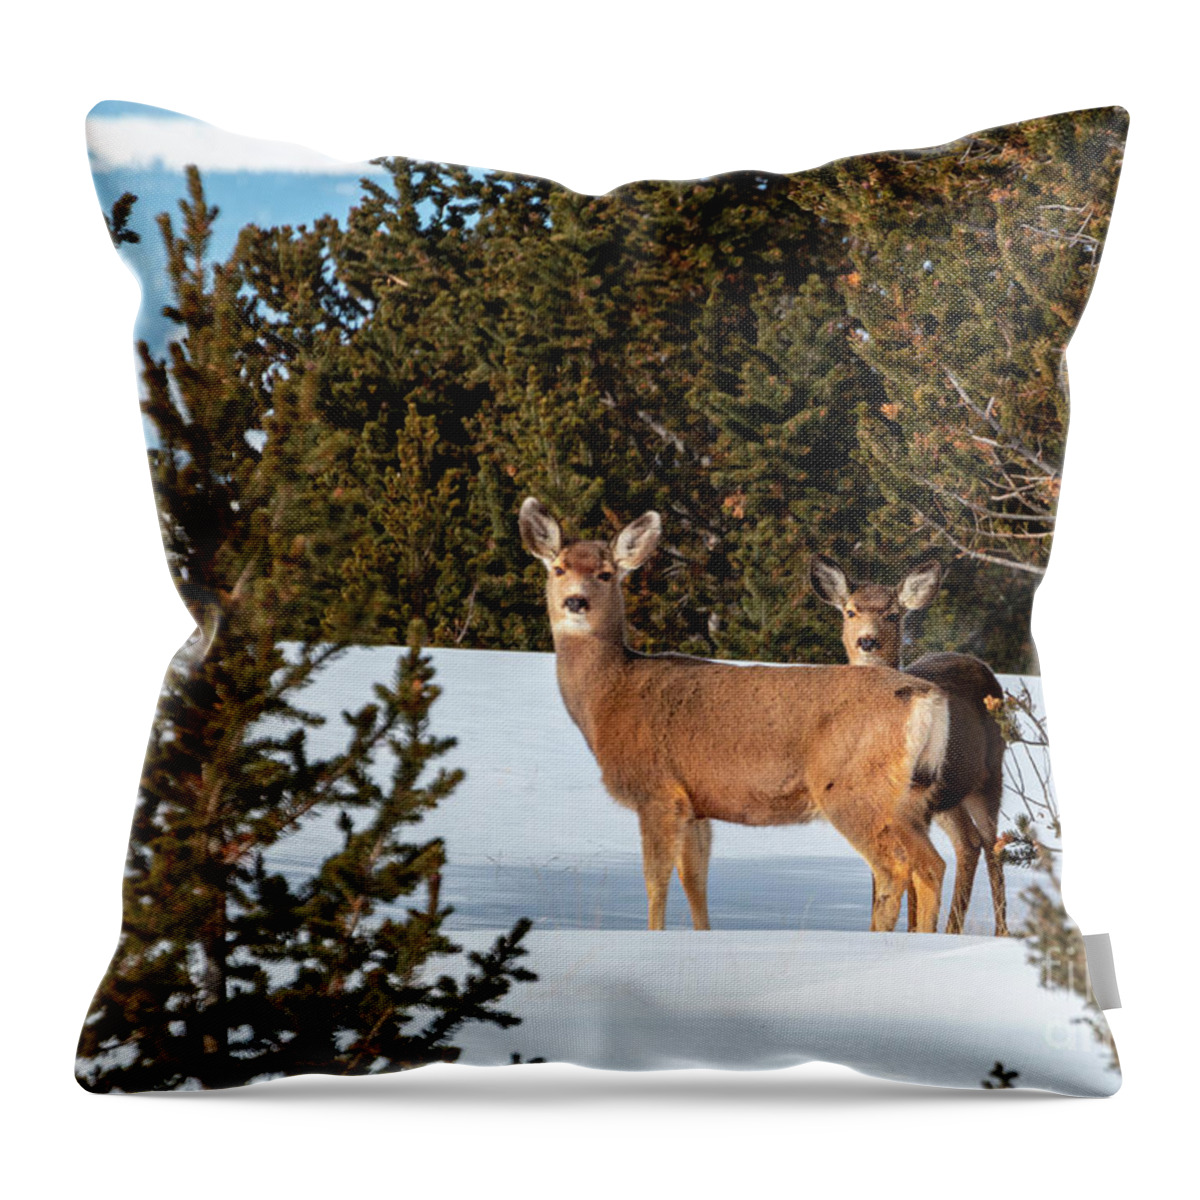 Deer Throw Pillow featuring the photograph Mule Deer Herd in Deep Snow by Steven Krull